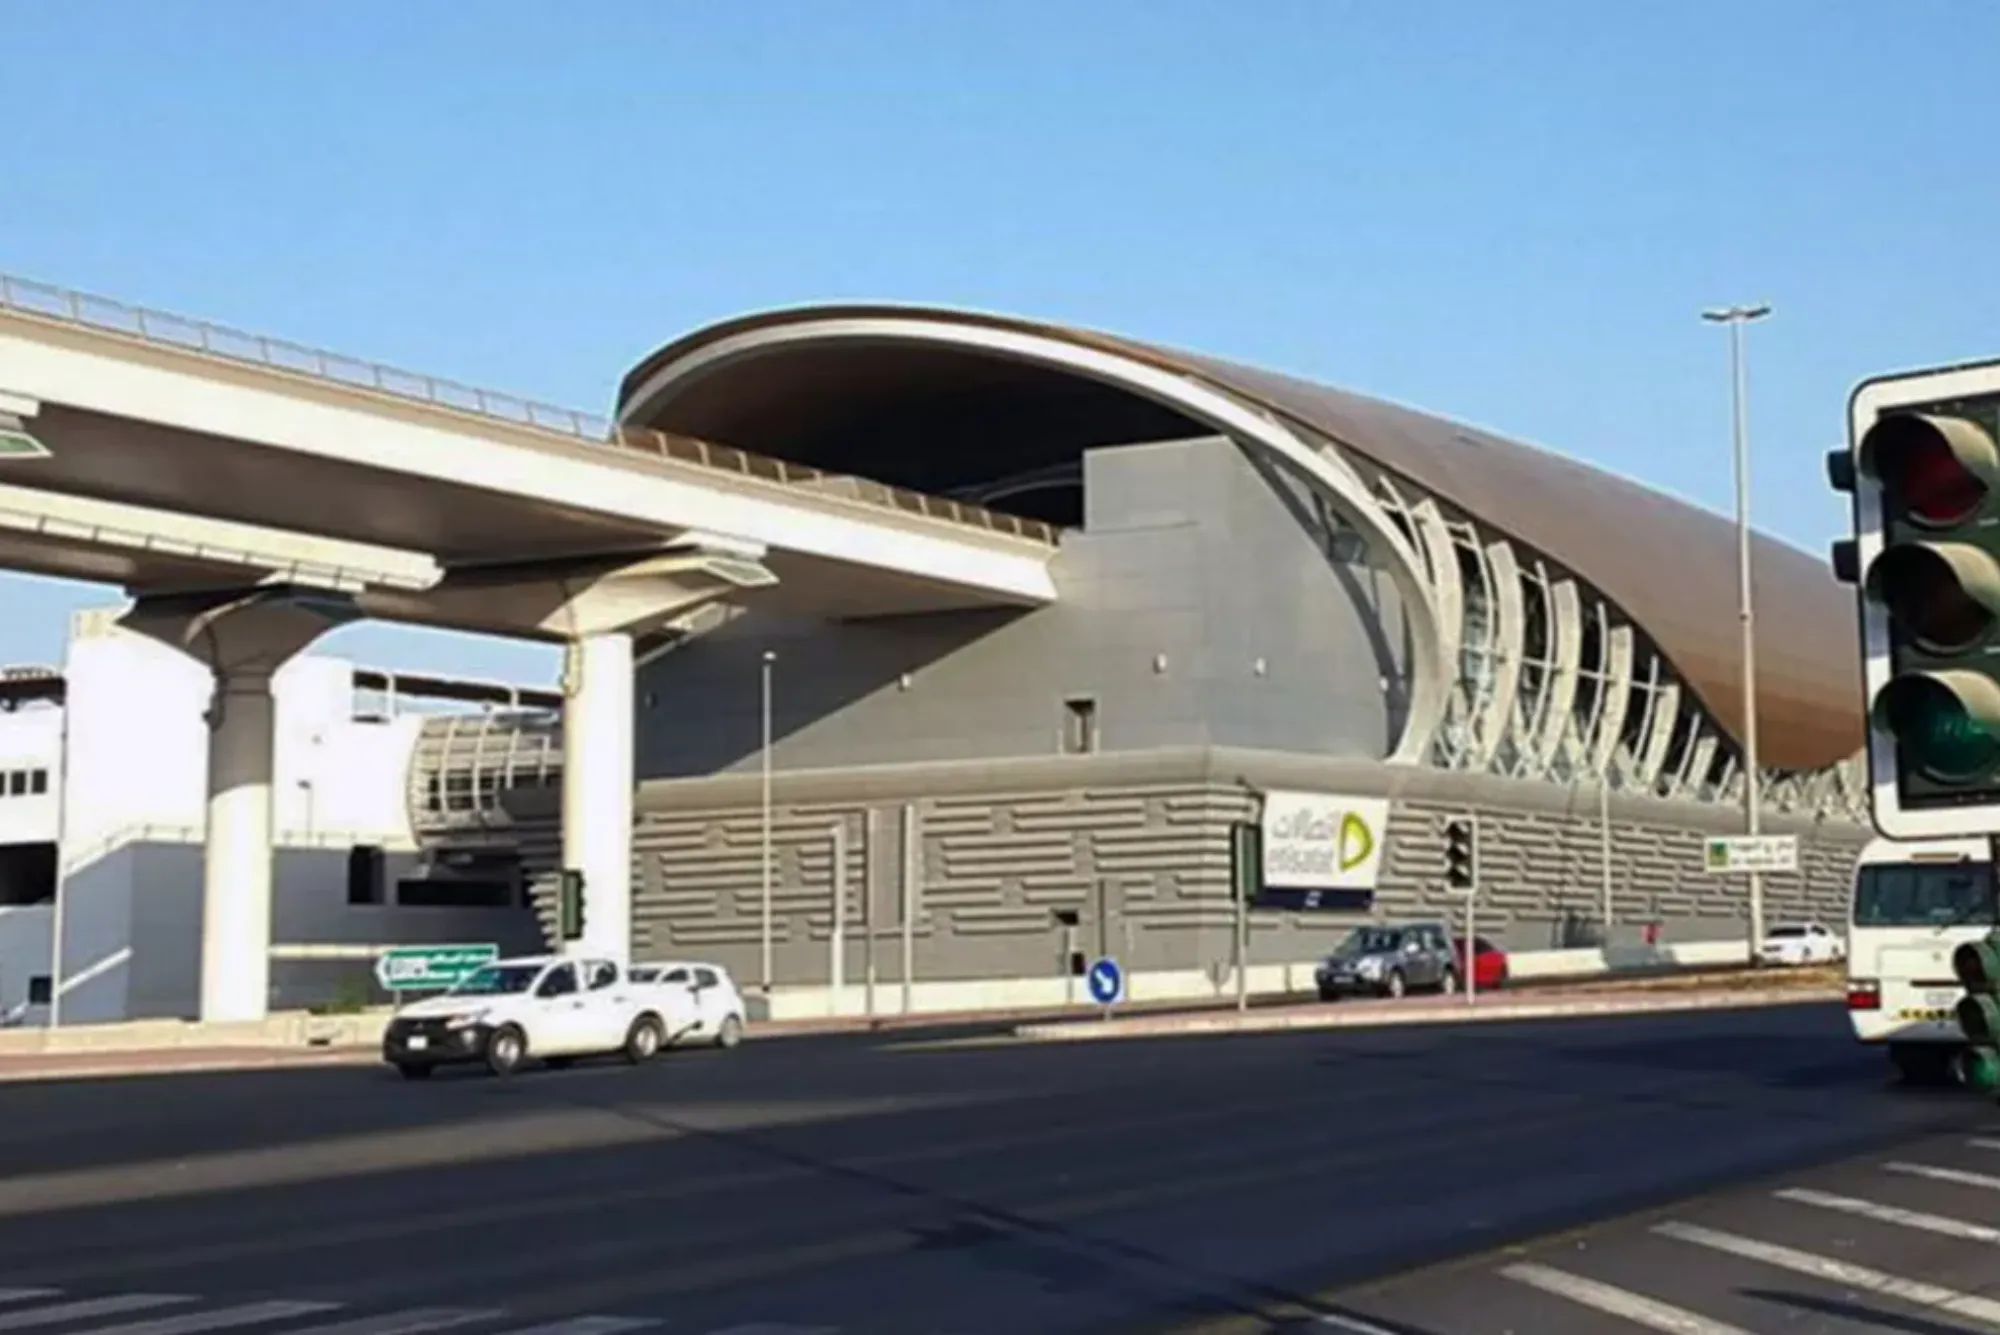 Explore Etisalat Metro Station: Dubai's Transport Hub